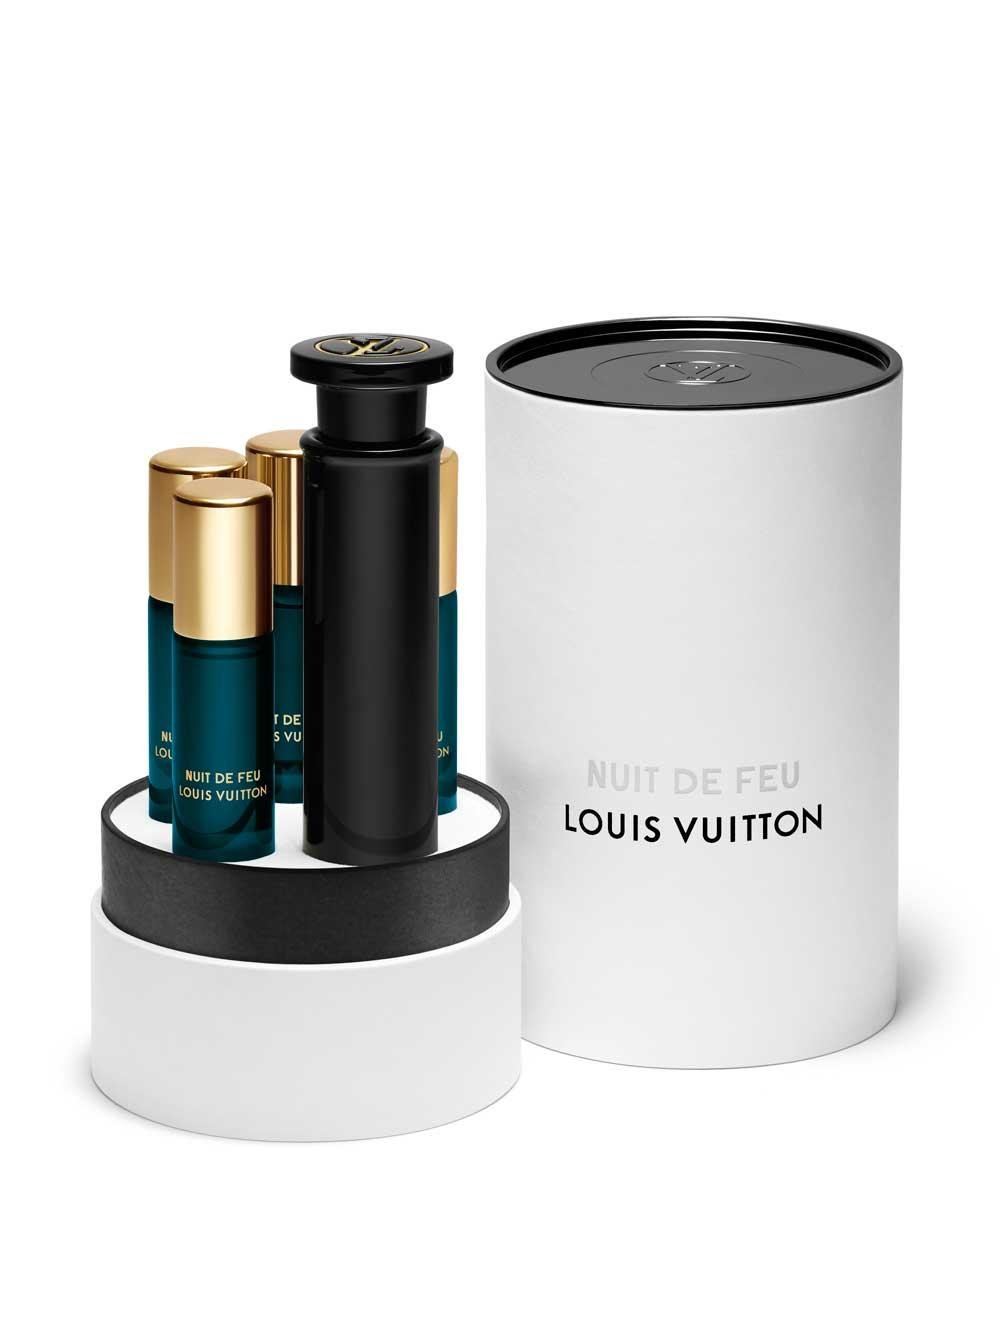 Louis Vuitton Nuit de Feu ~ New Fragrances